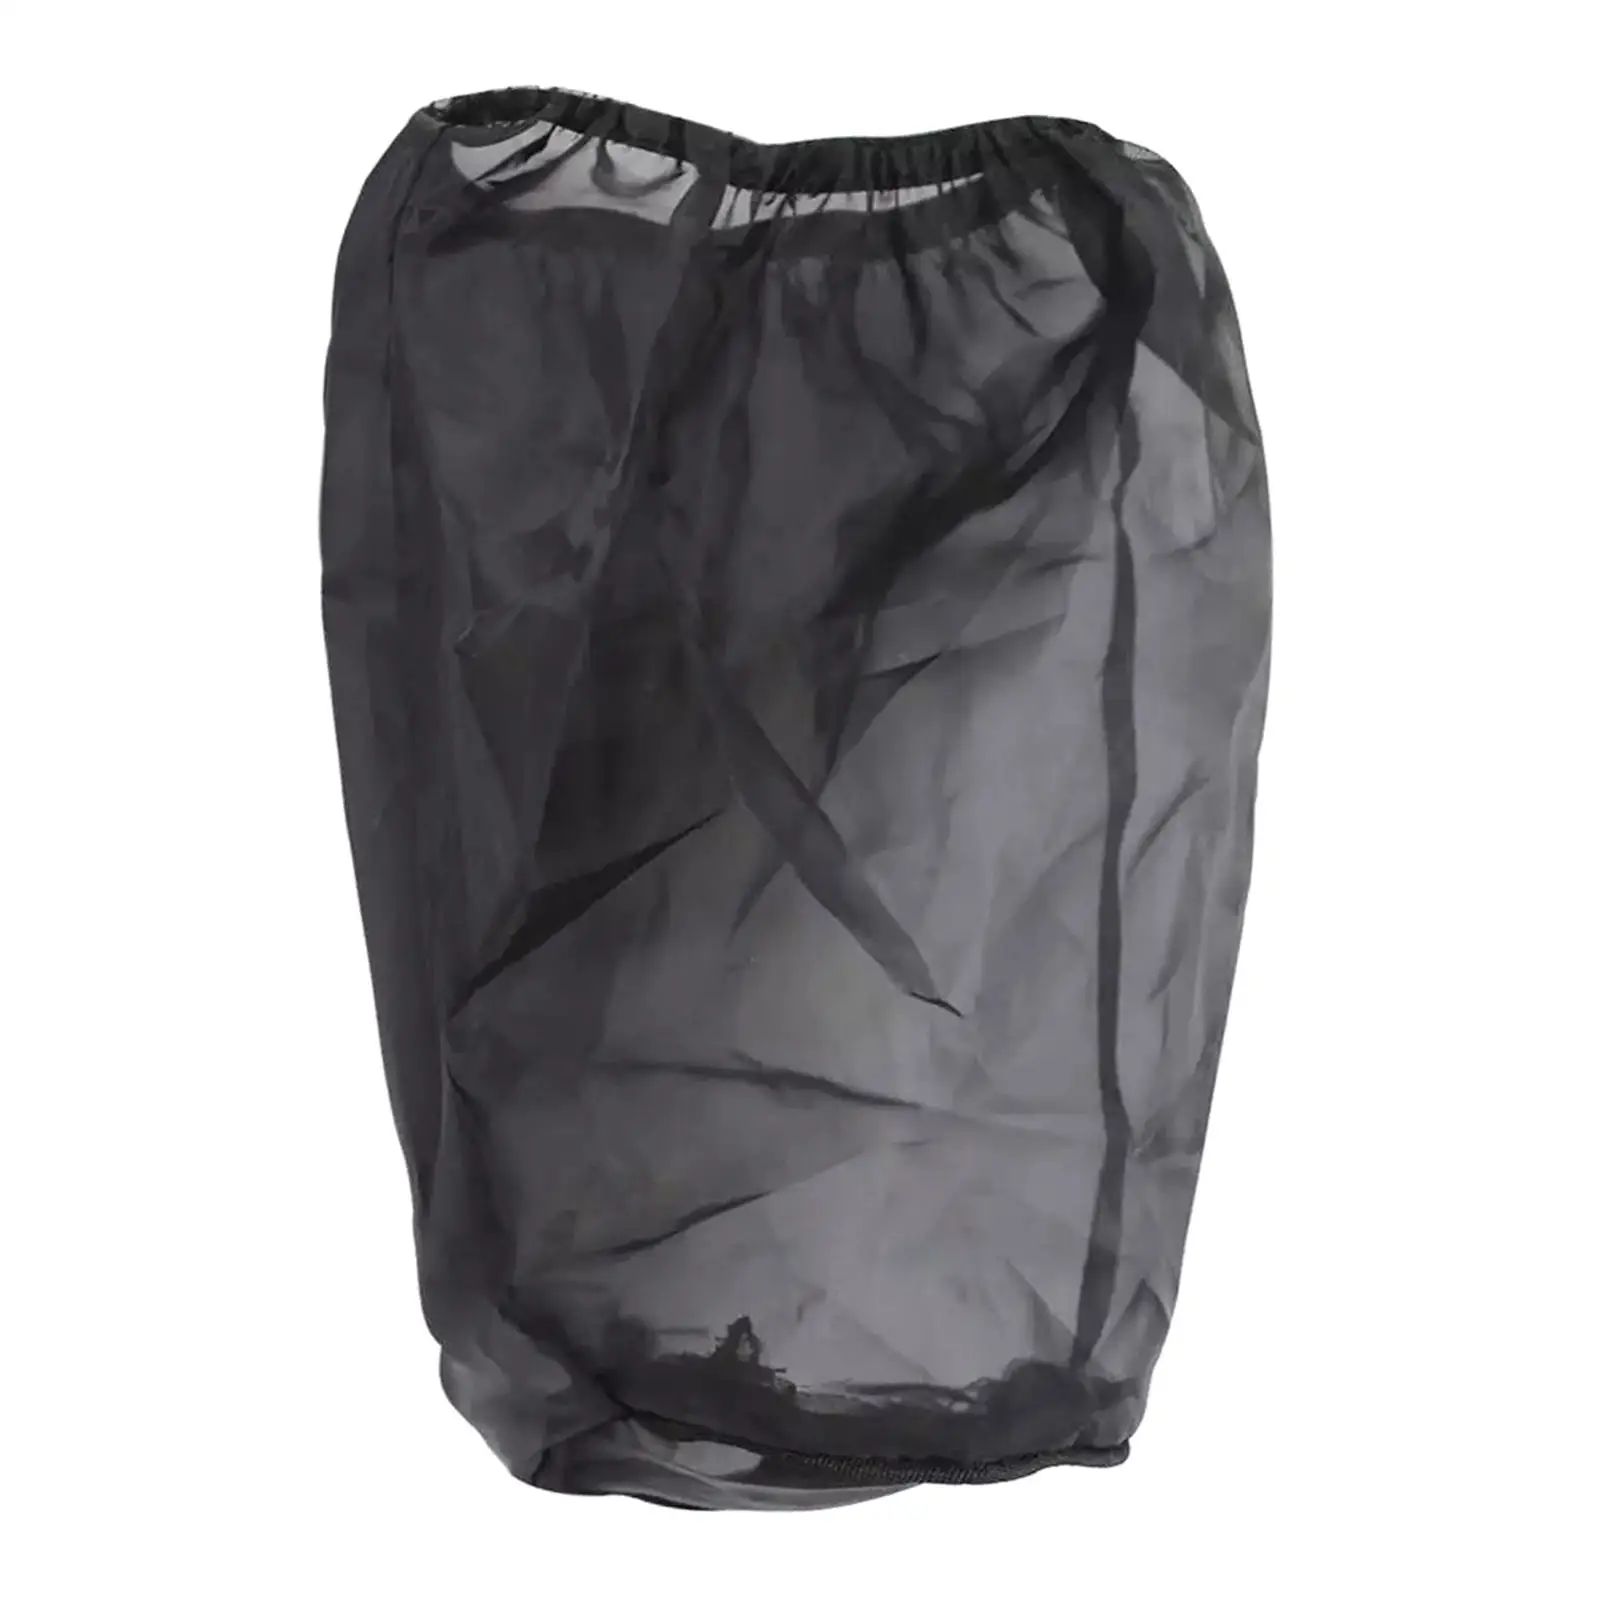 Black Dustproof Air Cleaner Rain Sock Cover Kit for Harley Easy Install